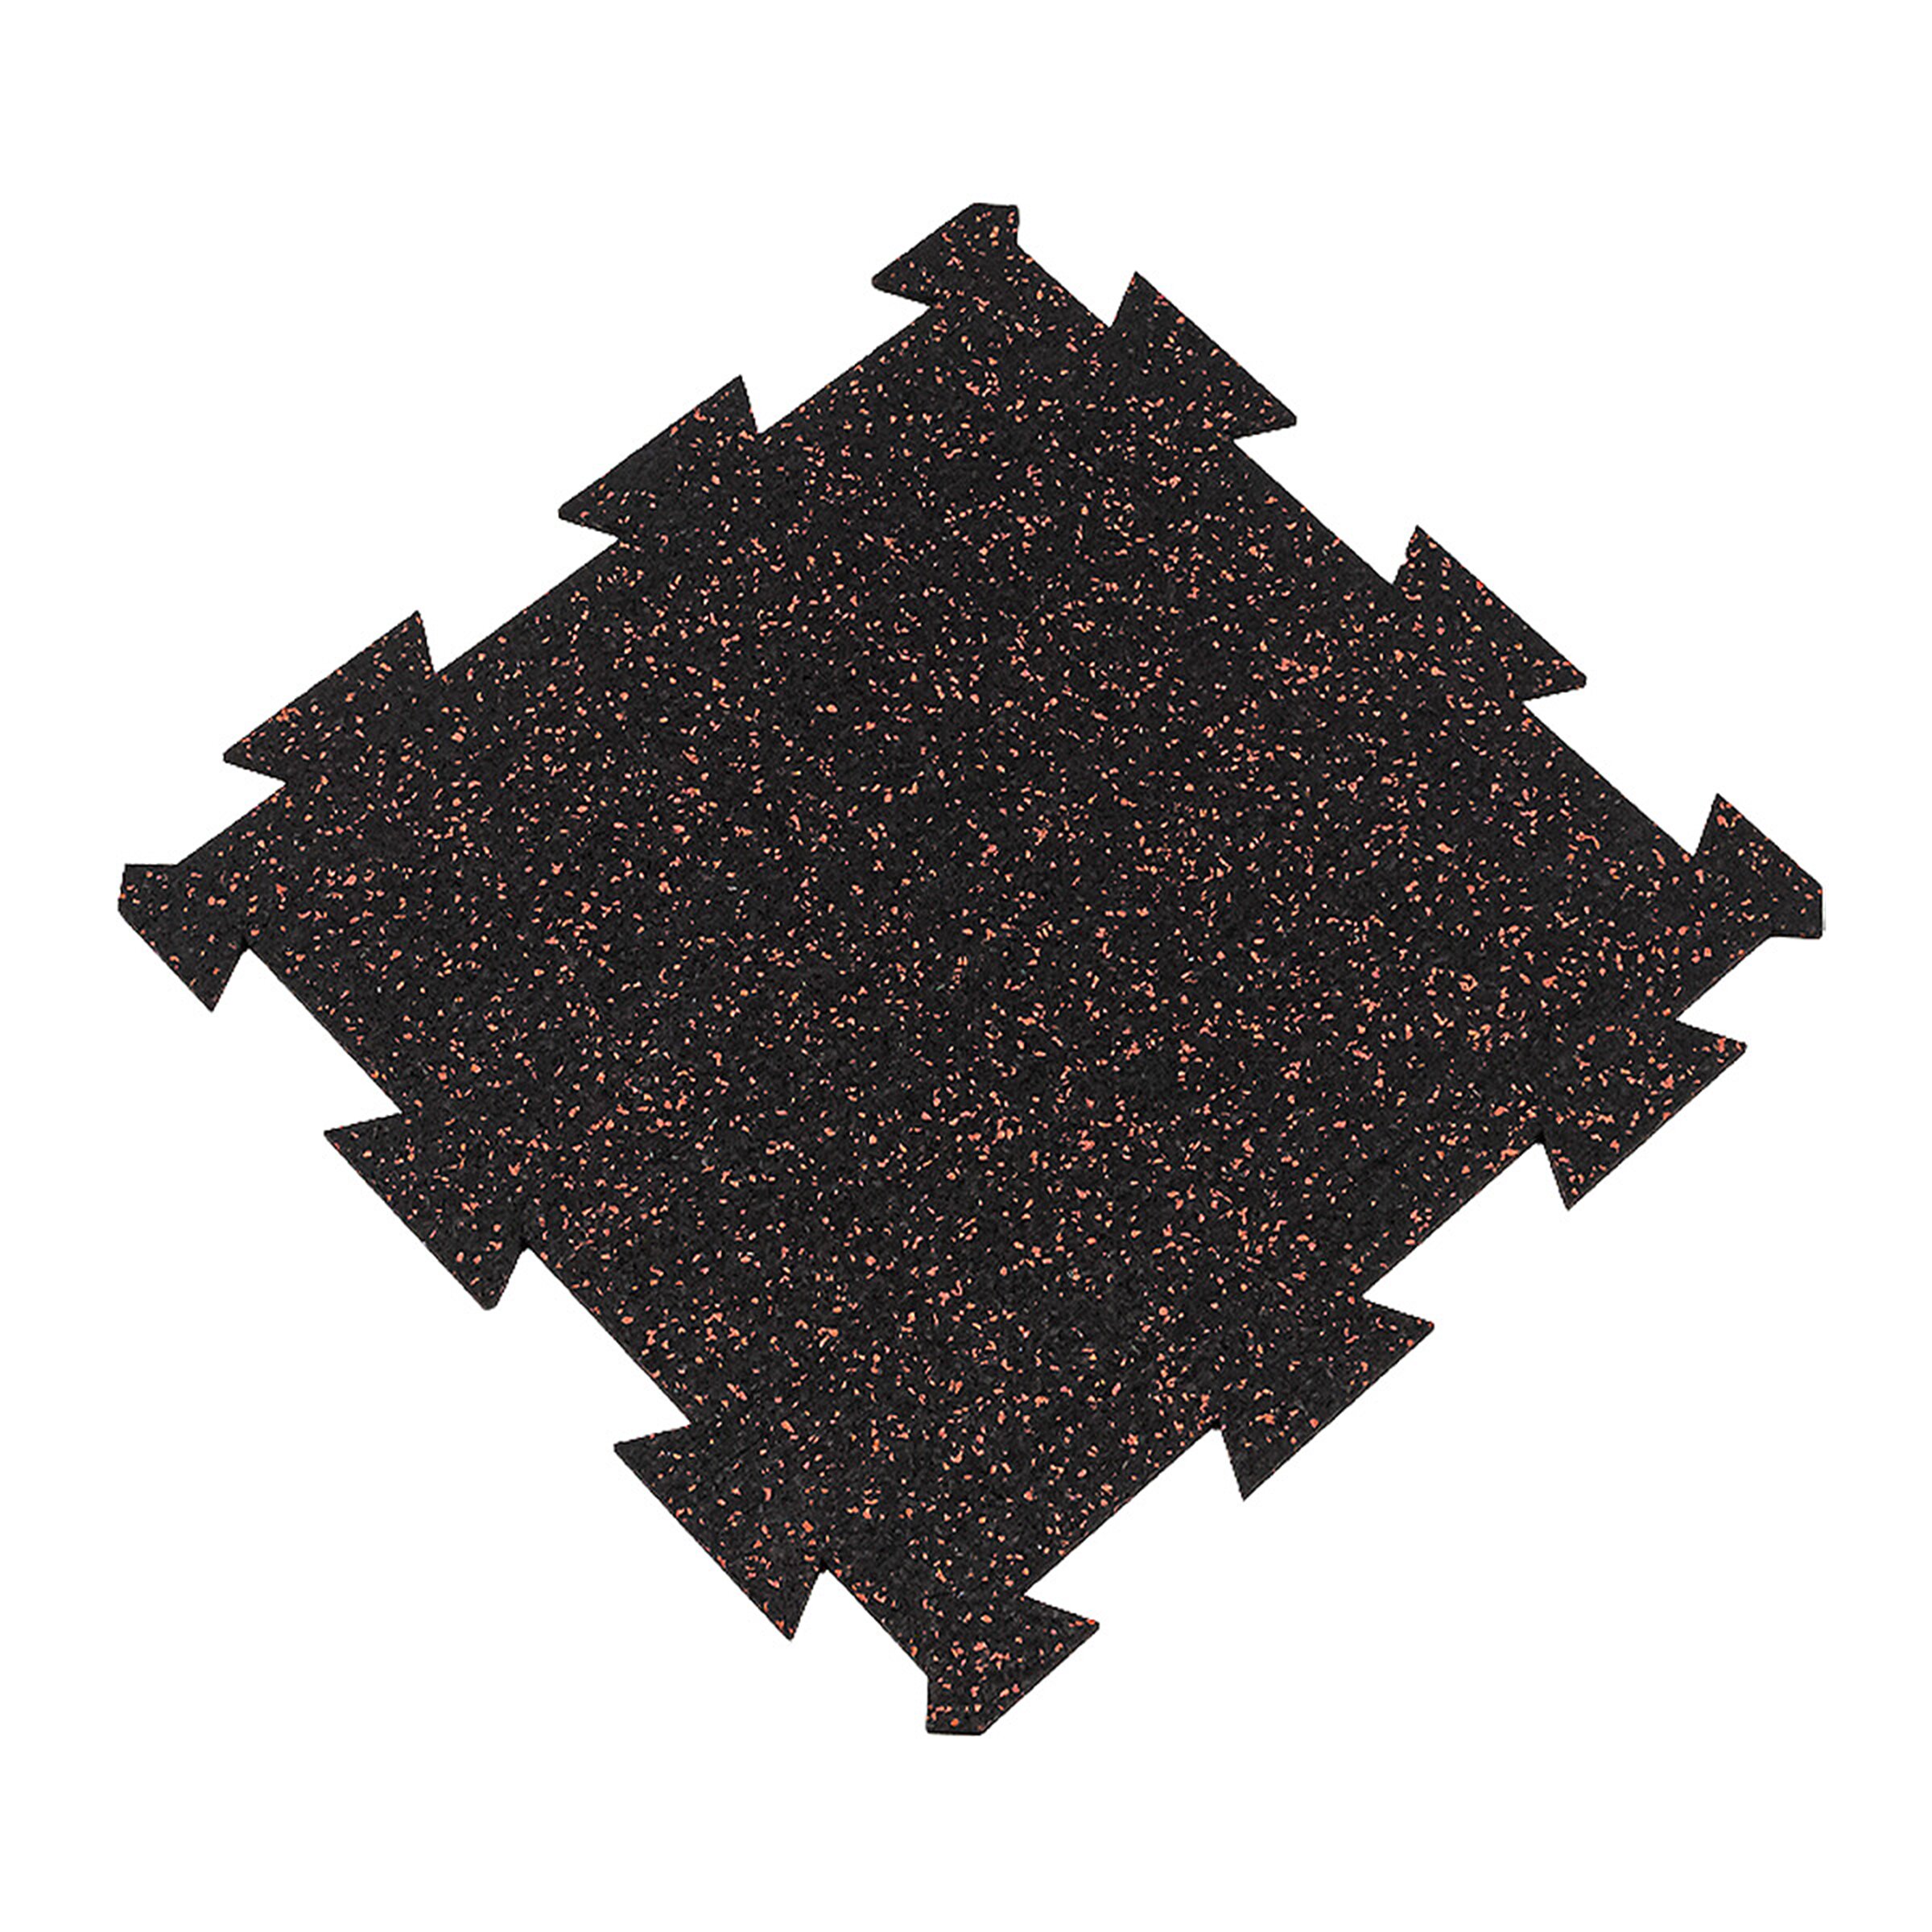 Černo-červená gumová puzzle modulová dlažba FLOMA SF1050 FitFlo - délka 50 cm, šířka 50 cm, výška 0,8 cm